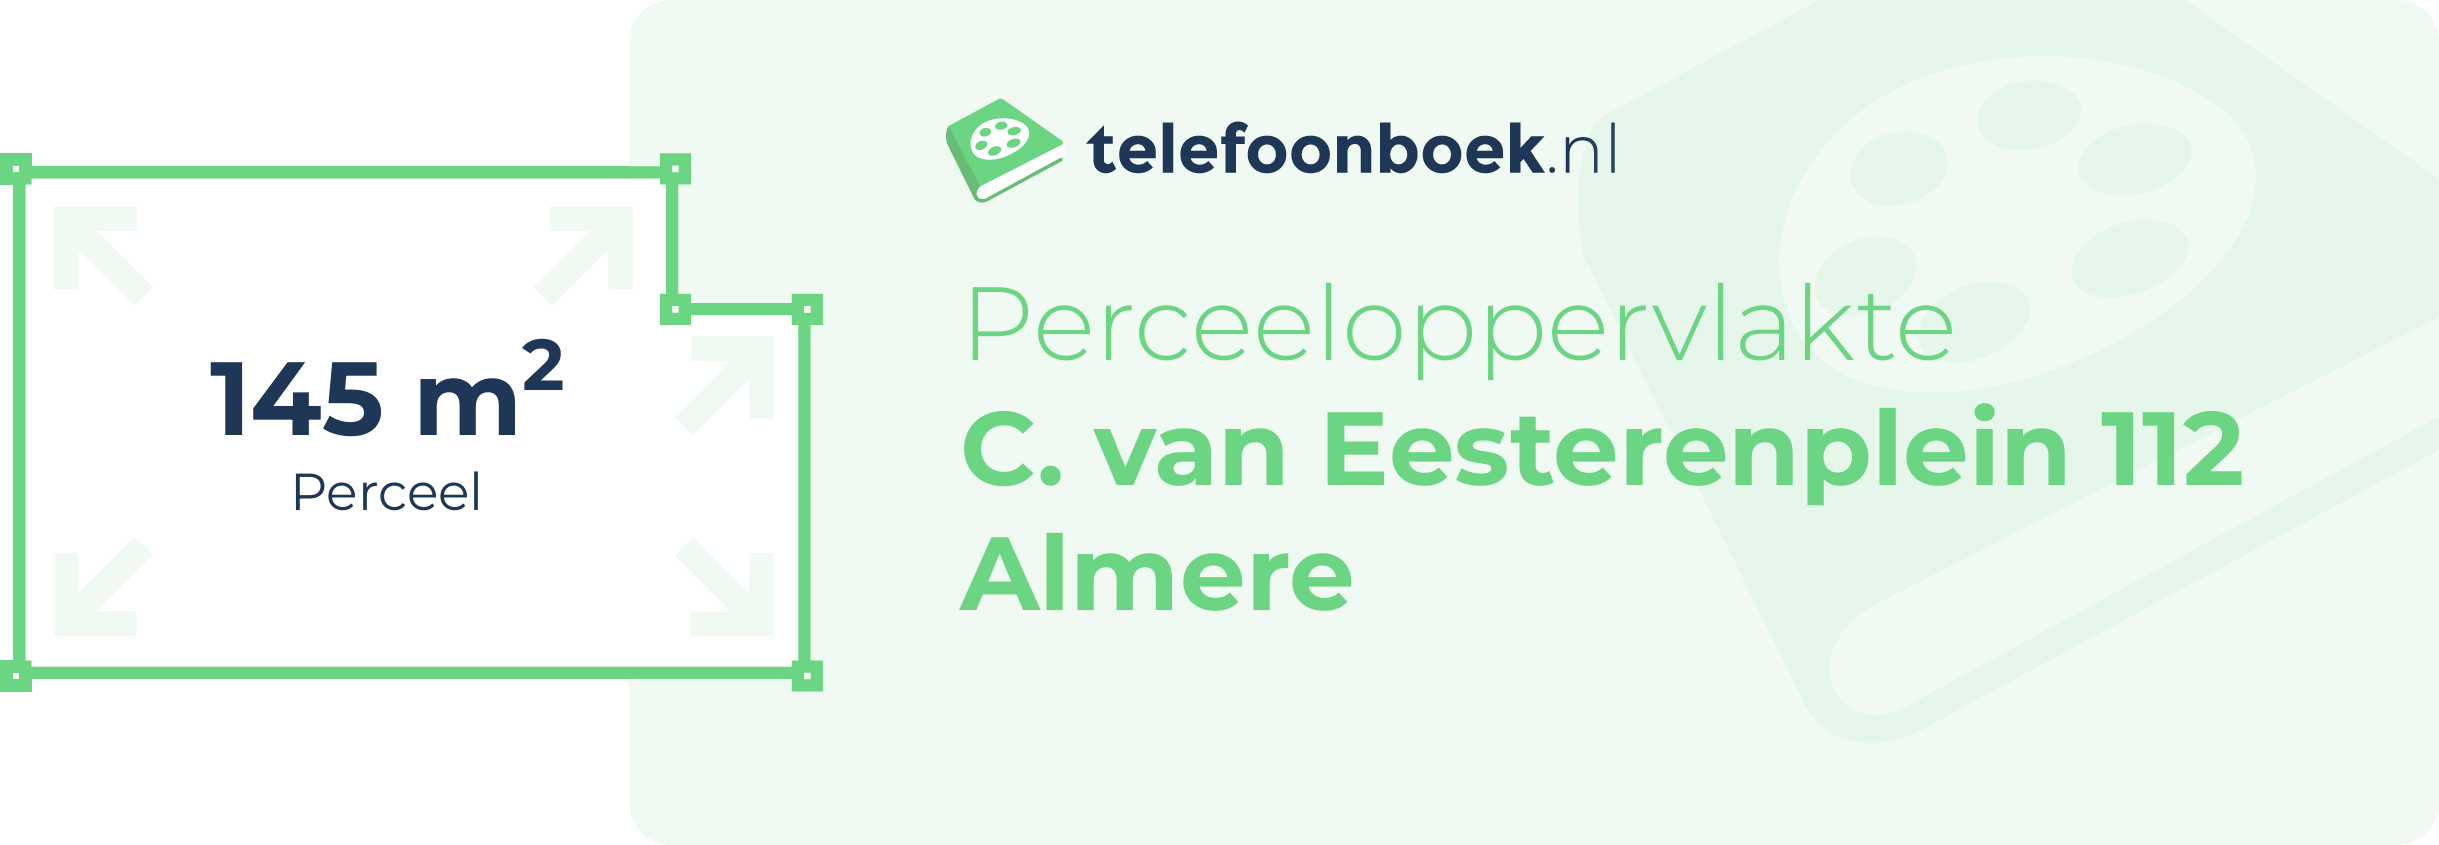 Perceeloppervlakte C. Van Eesterenplein 112 Almere